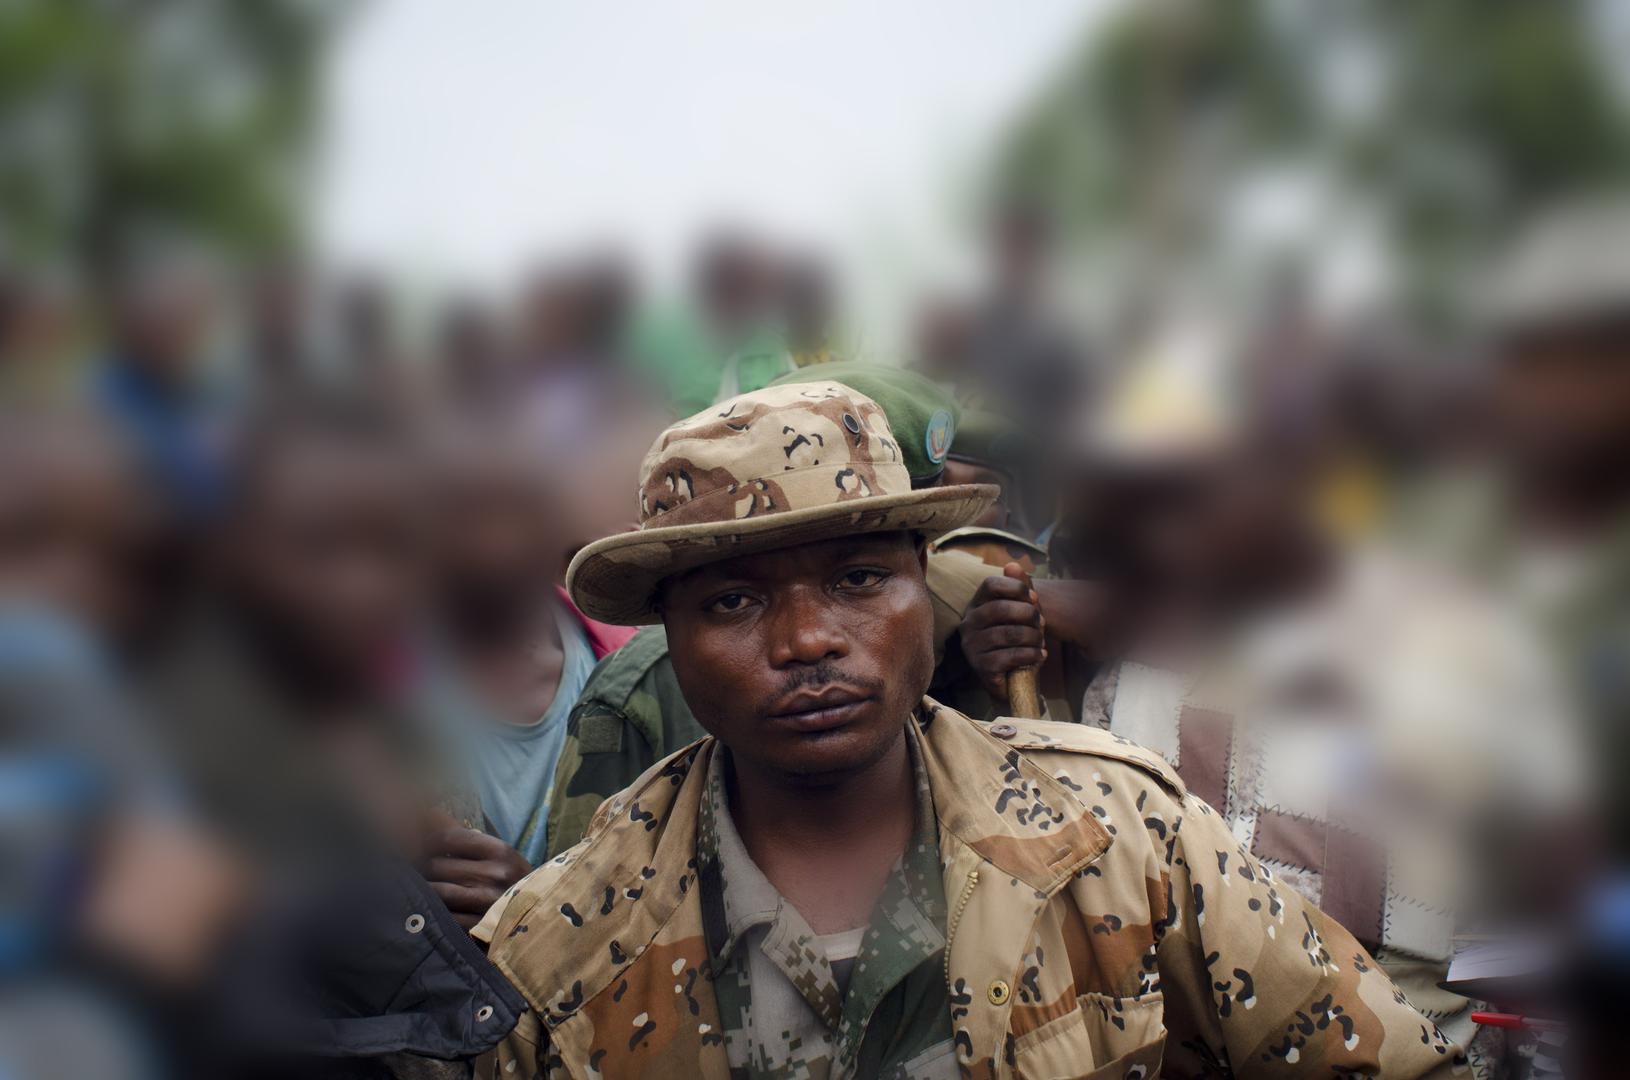 Le chef de guerre congolais Marcel Habarugira, photographié en 2012 à Ngululu, à 80 kilomètres au nord-ouest de Goma, en République démocratique du Congo.